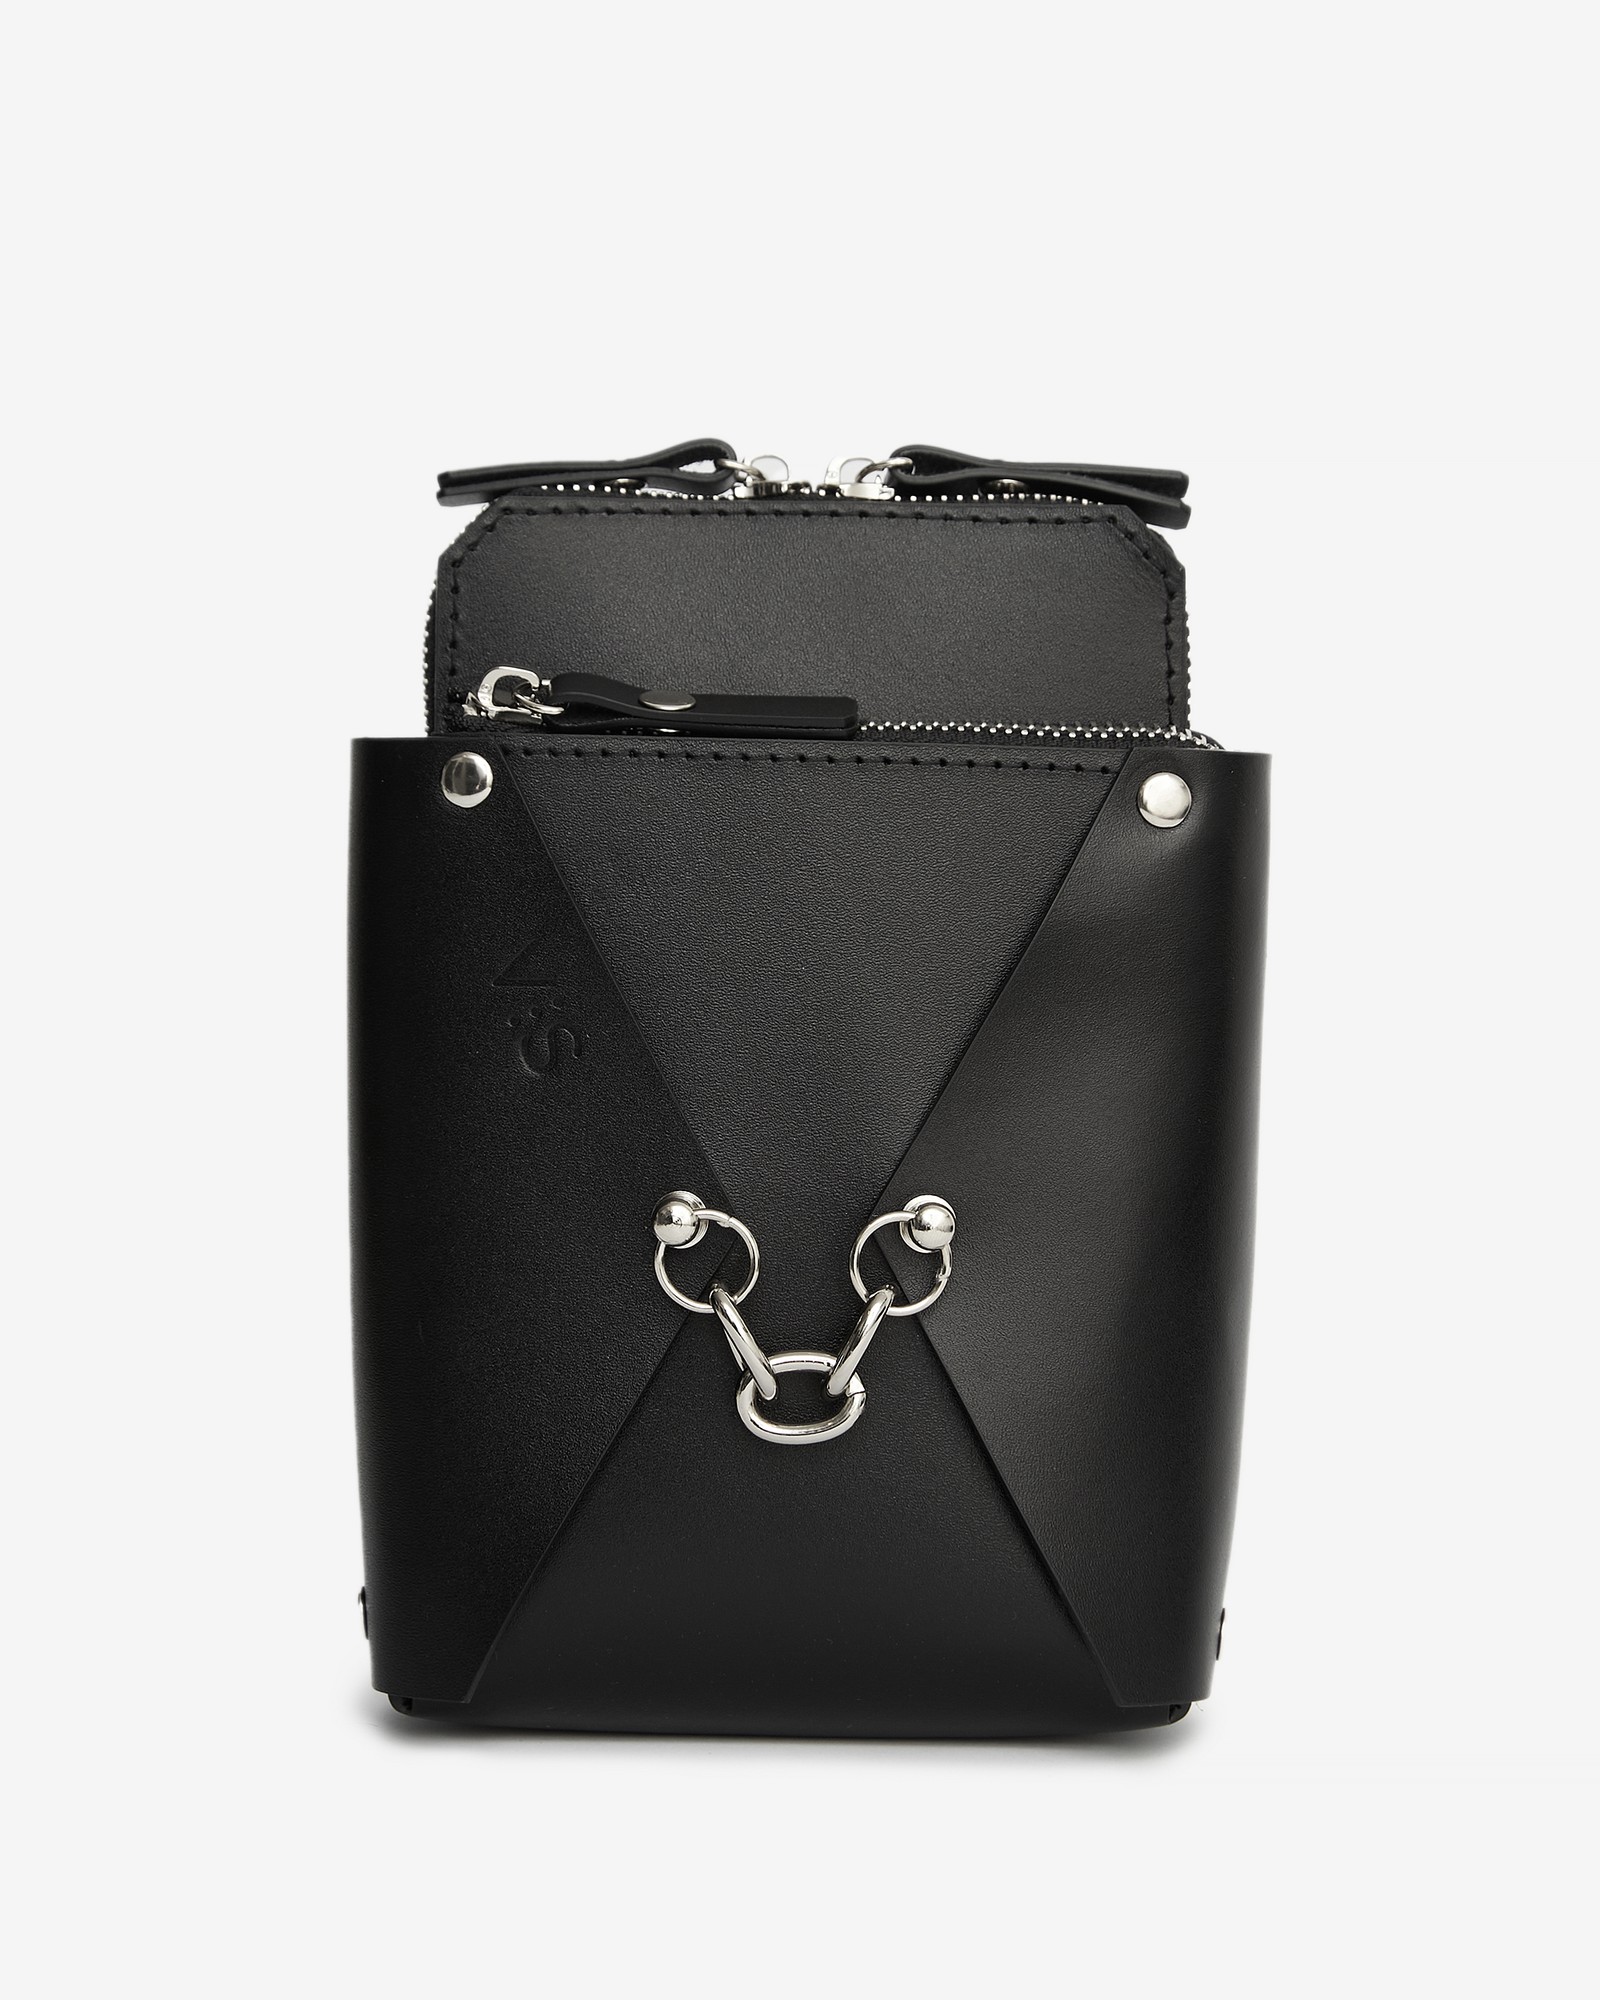 Talia leather bag black color